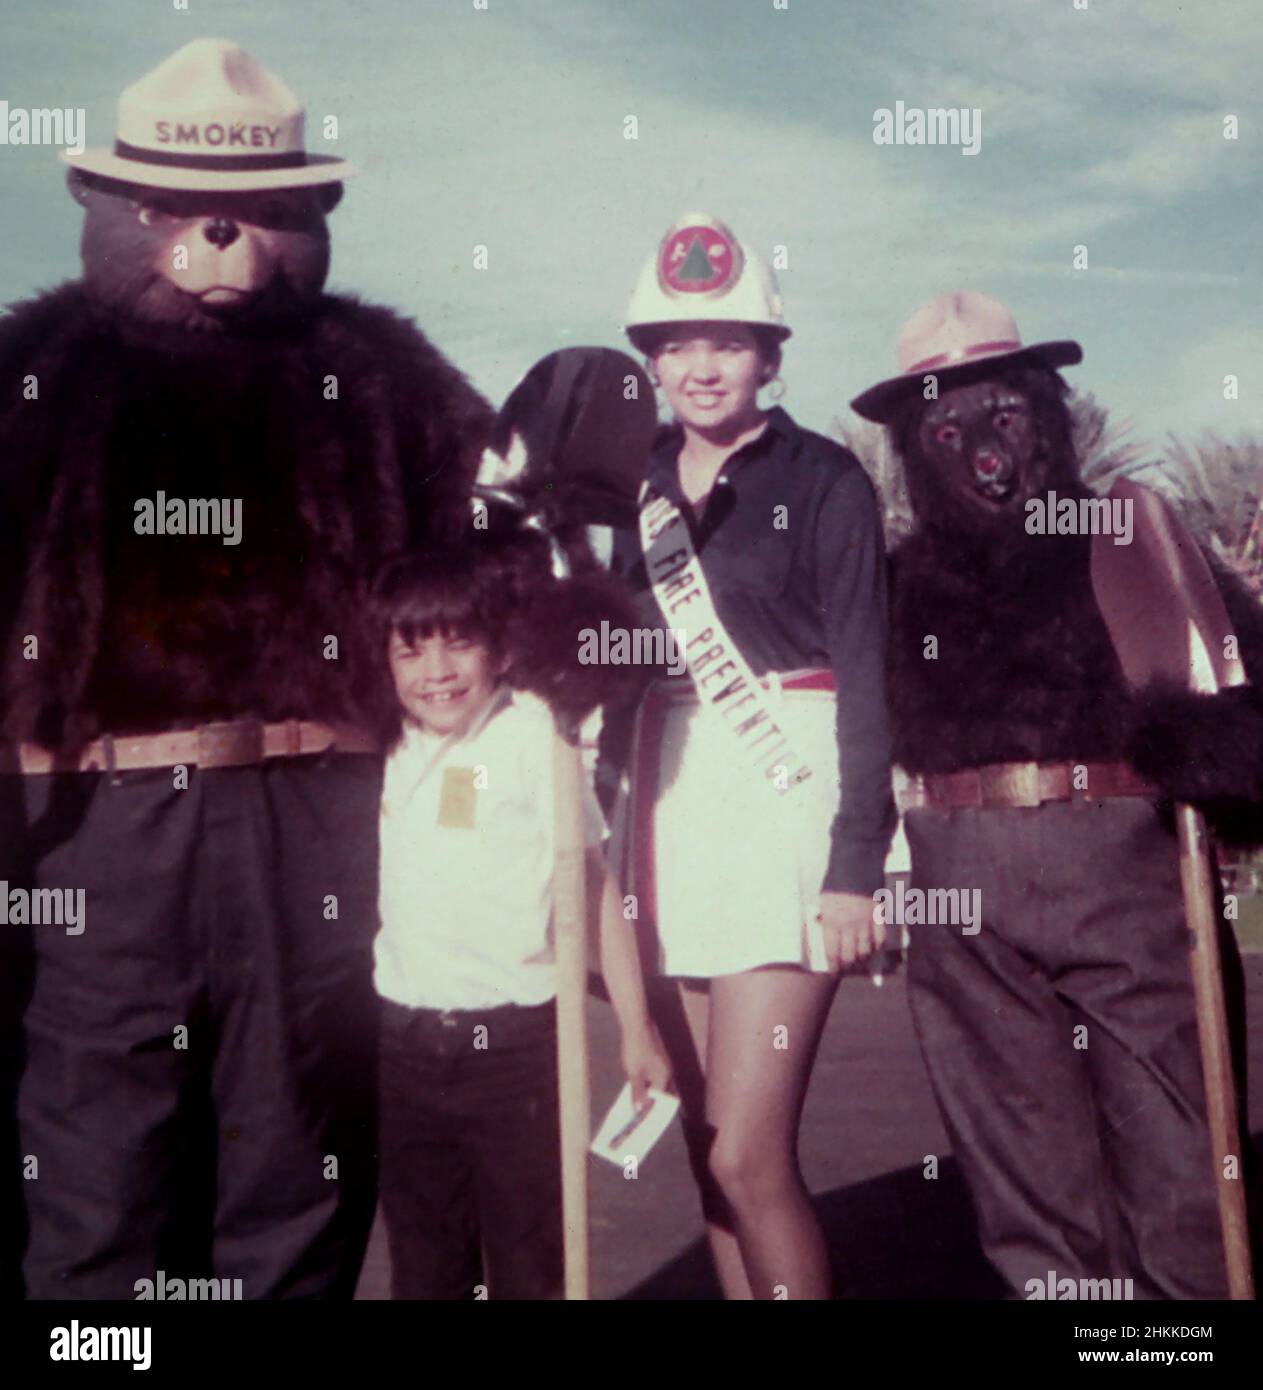 Ein aufgeregter kleiner Junge posiert mit zwei Smokey the Bears und einer Miss Fire Prevention Woman, Ca. 1966. Stockfoto